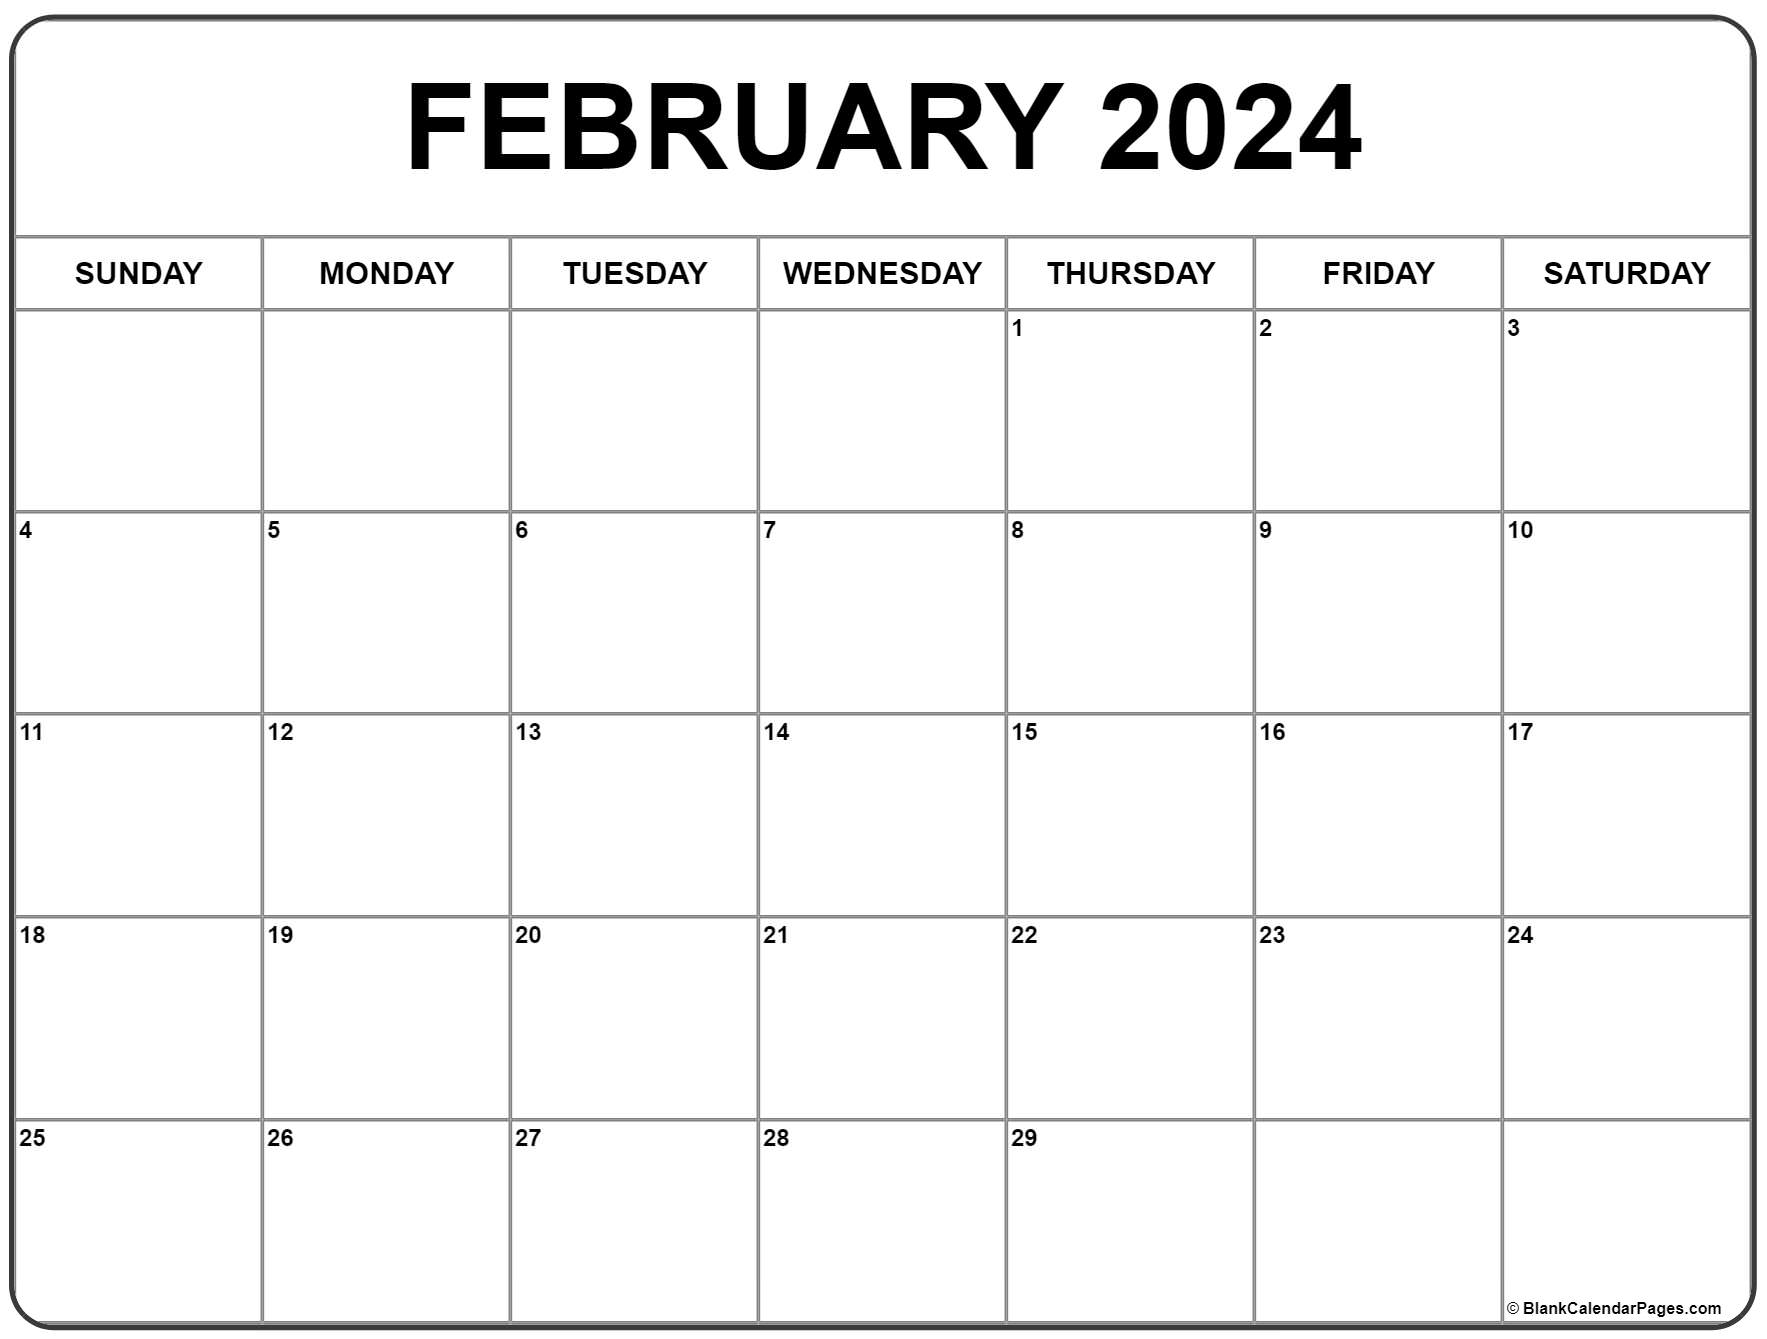 February 2024 Calendar | Free Printable Calendar for 2024 February Calendar Printable Free